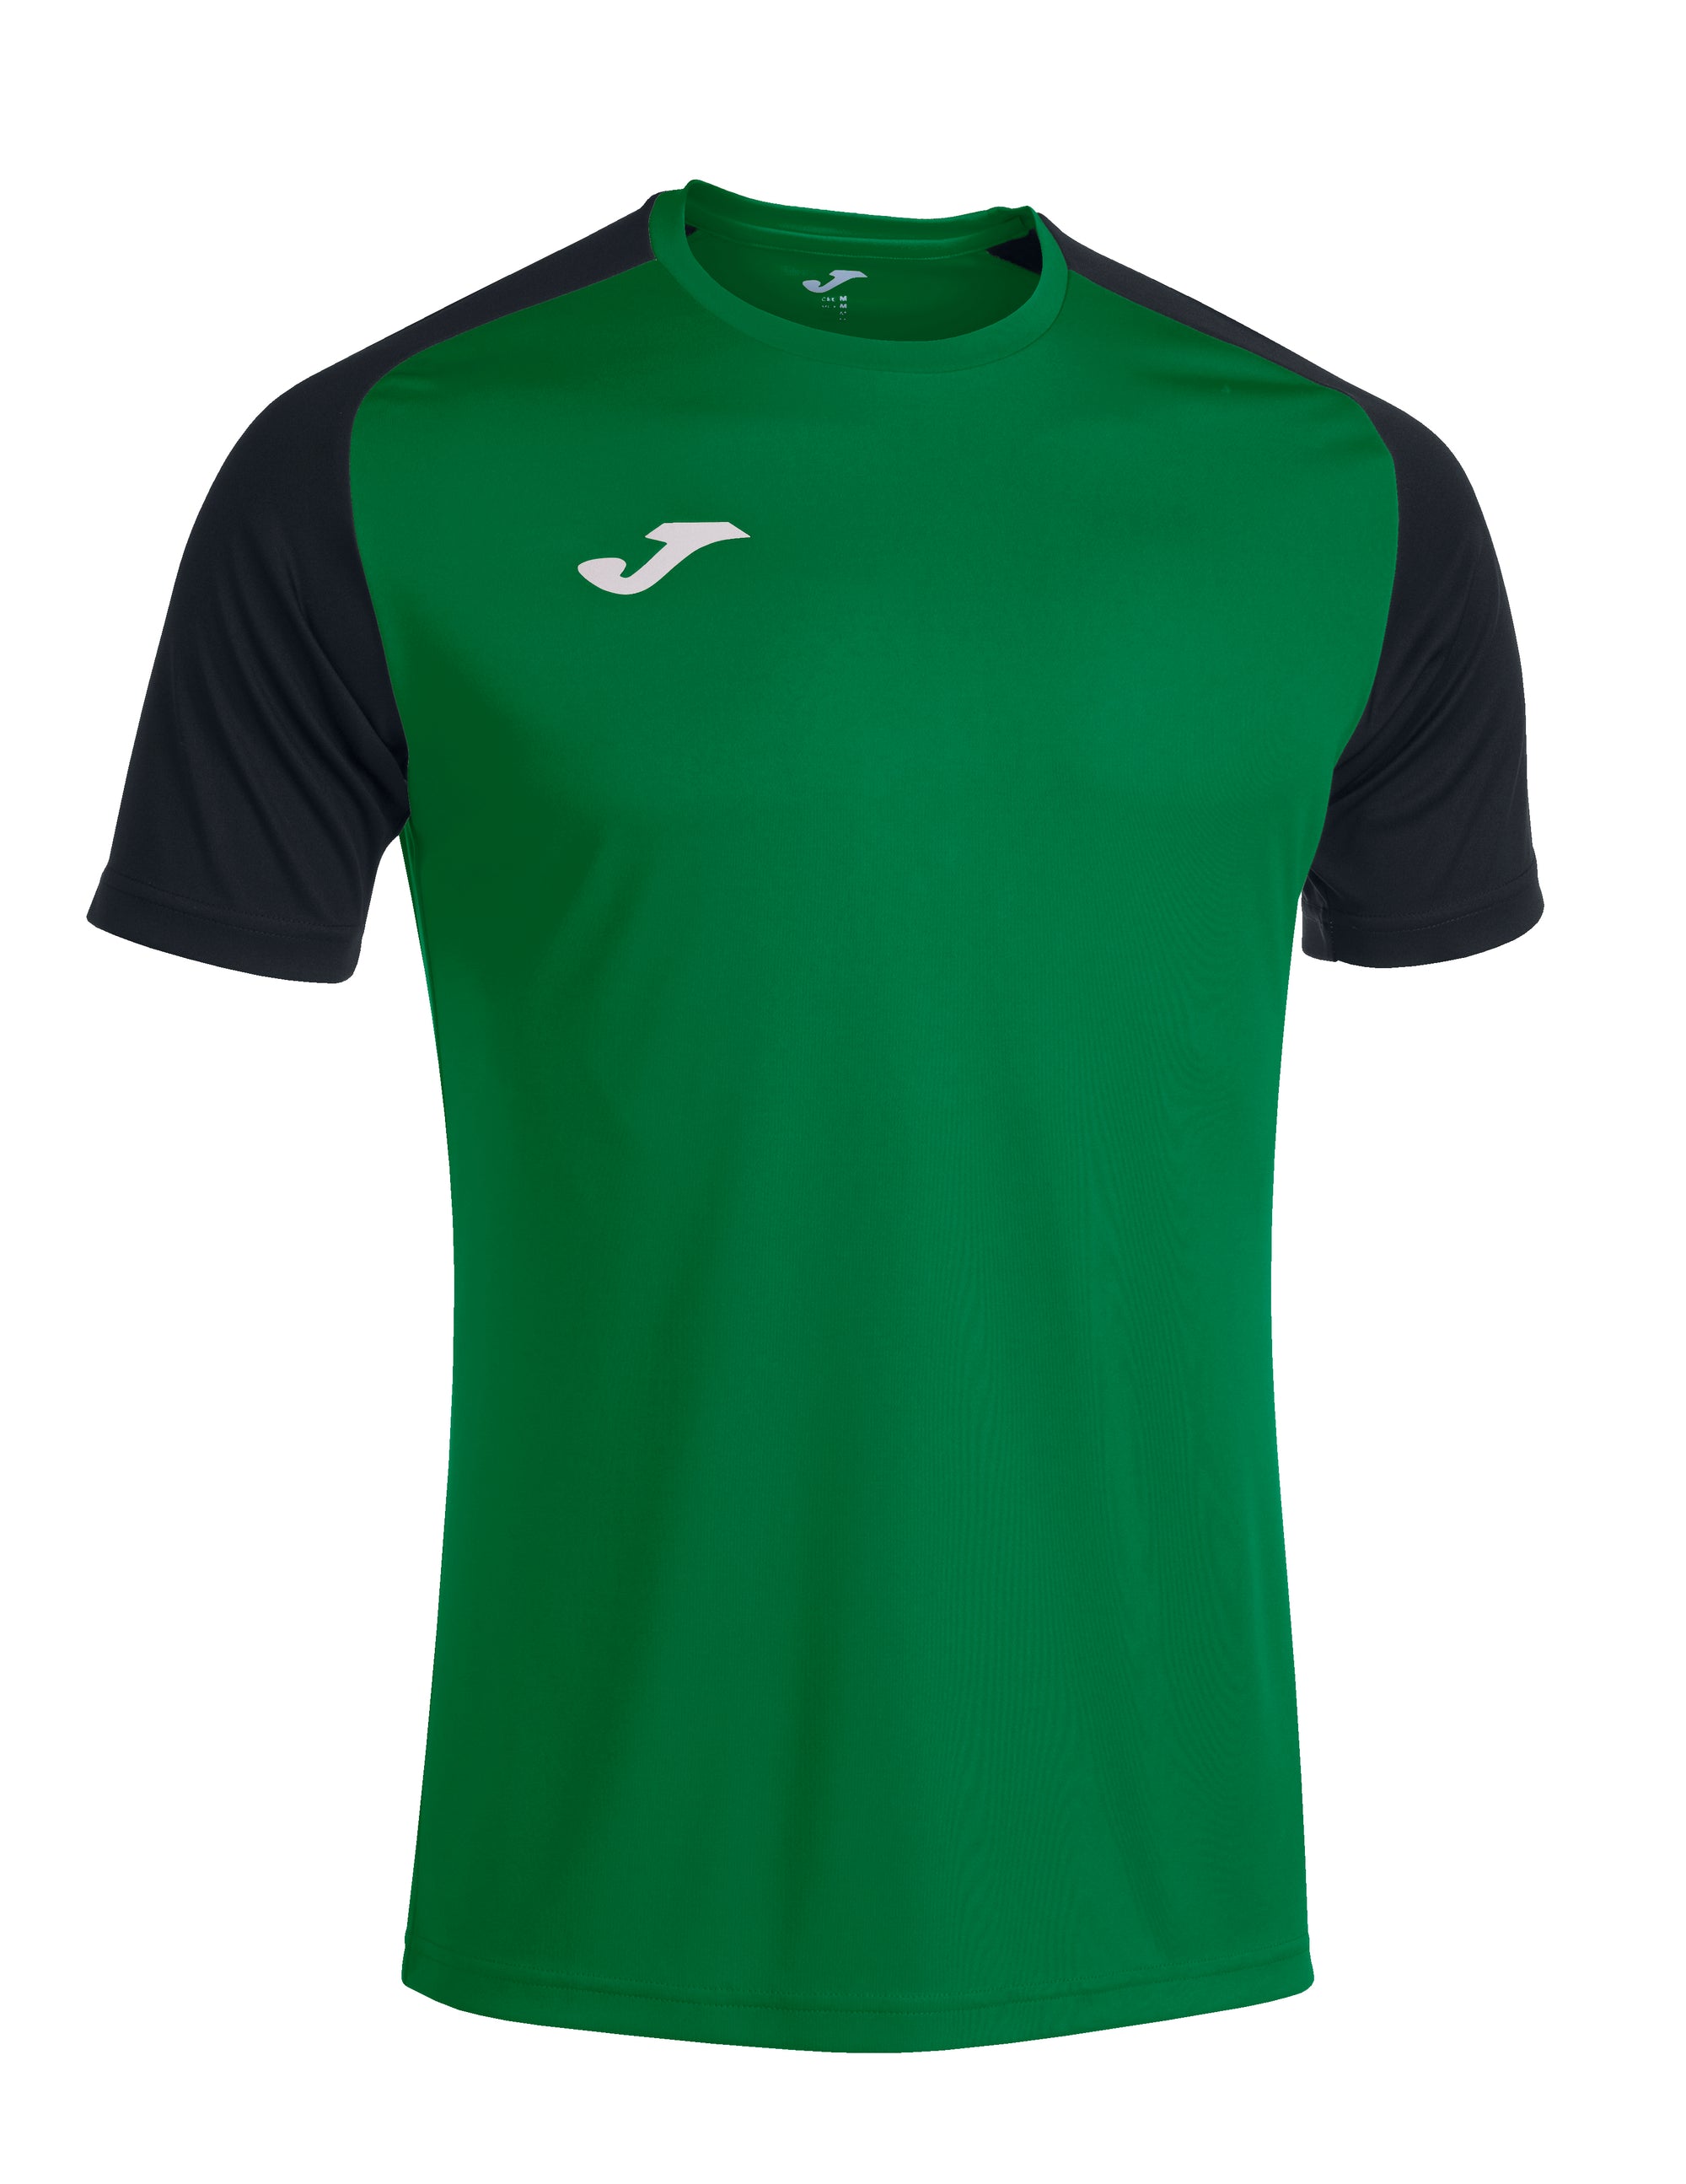 Joma Academy IV Short Sleeved T-Shirt - Green Medium/Black